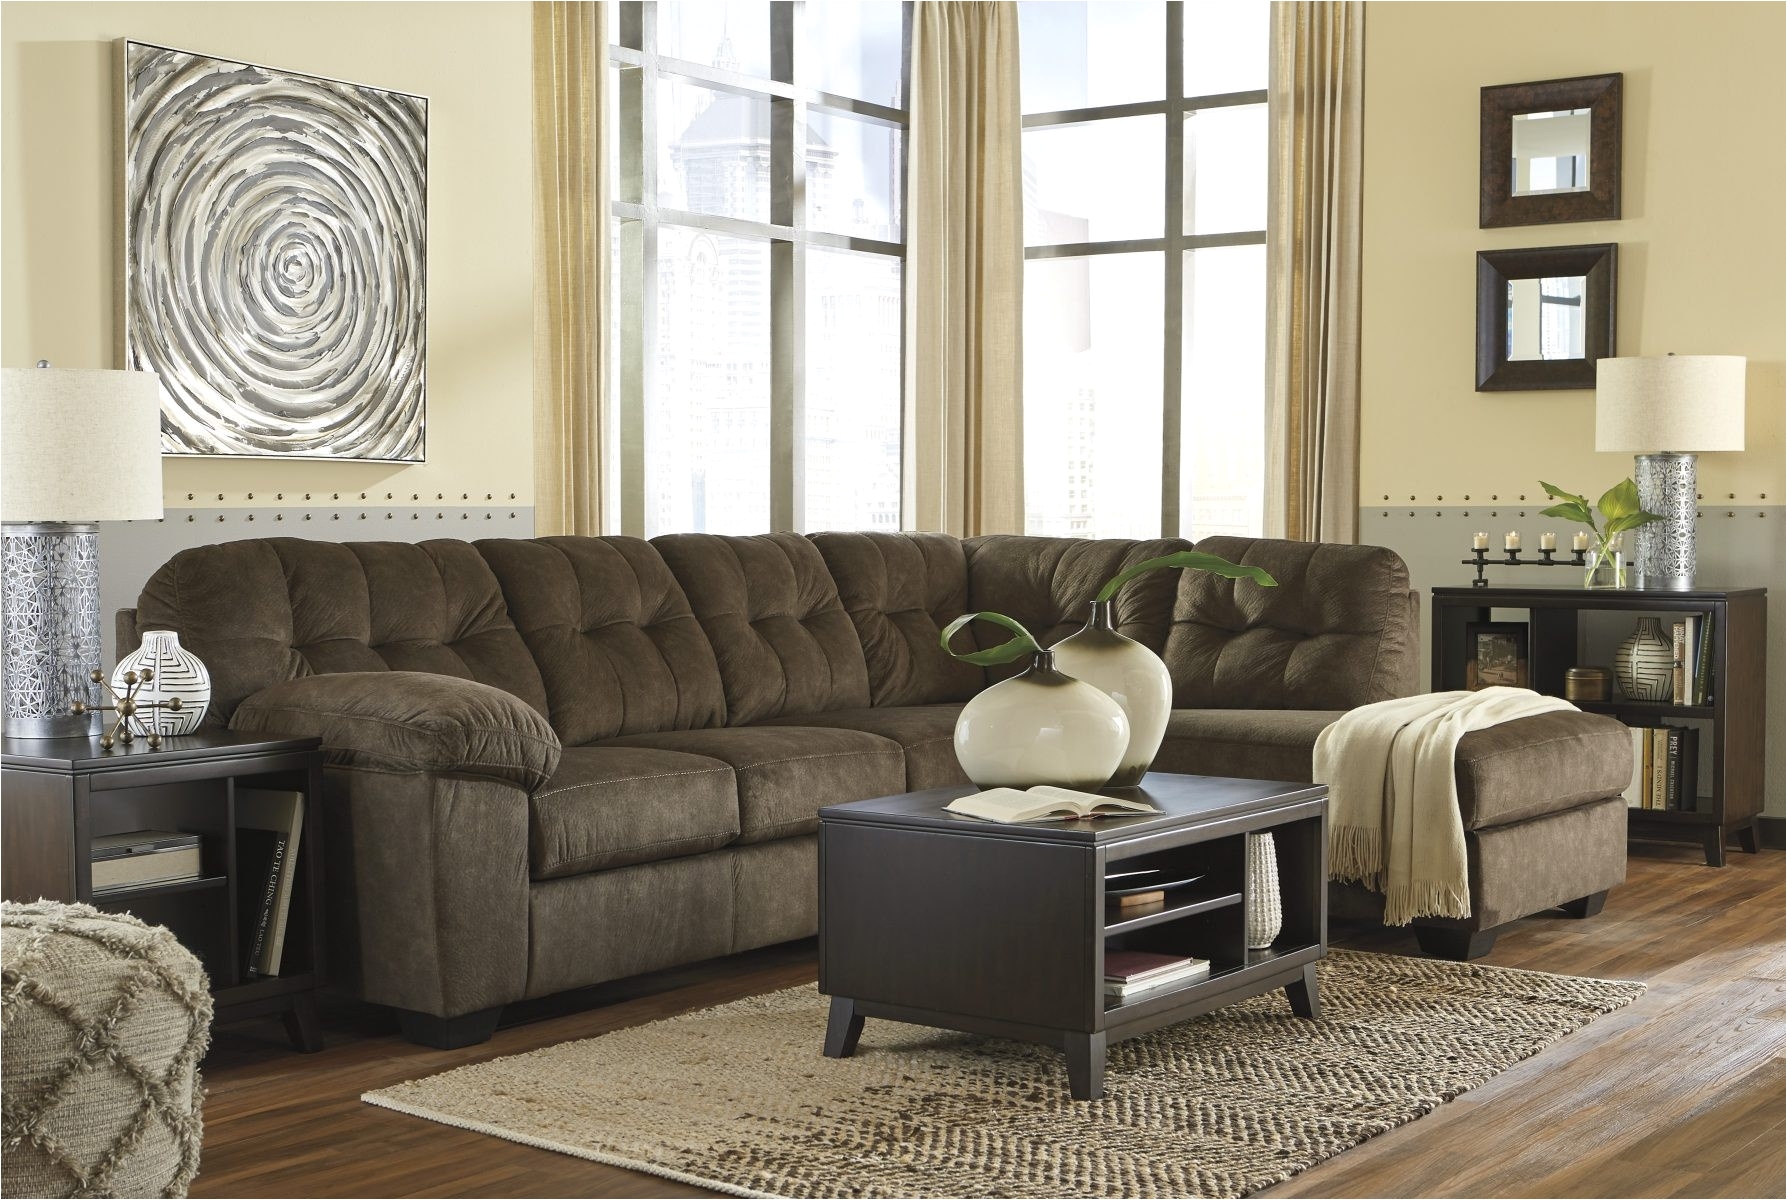 living room37 ashley furniture living room sets 999 very good elegant ashley design furniture